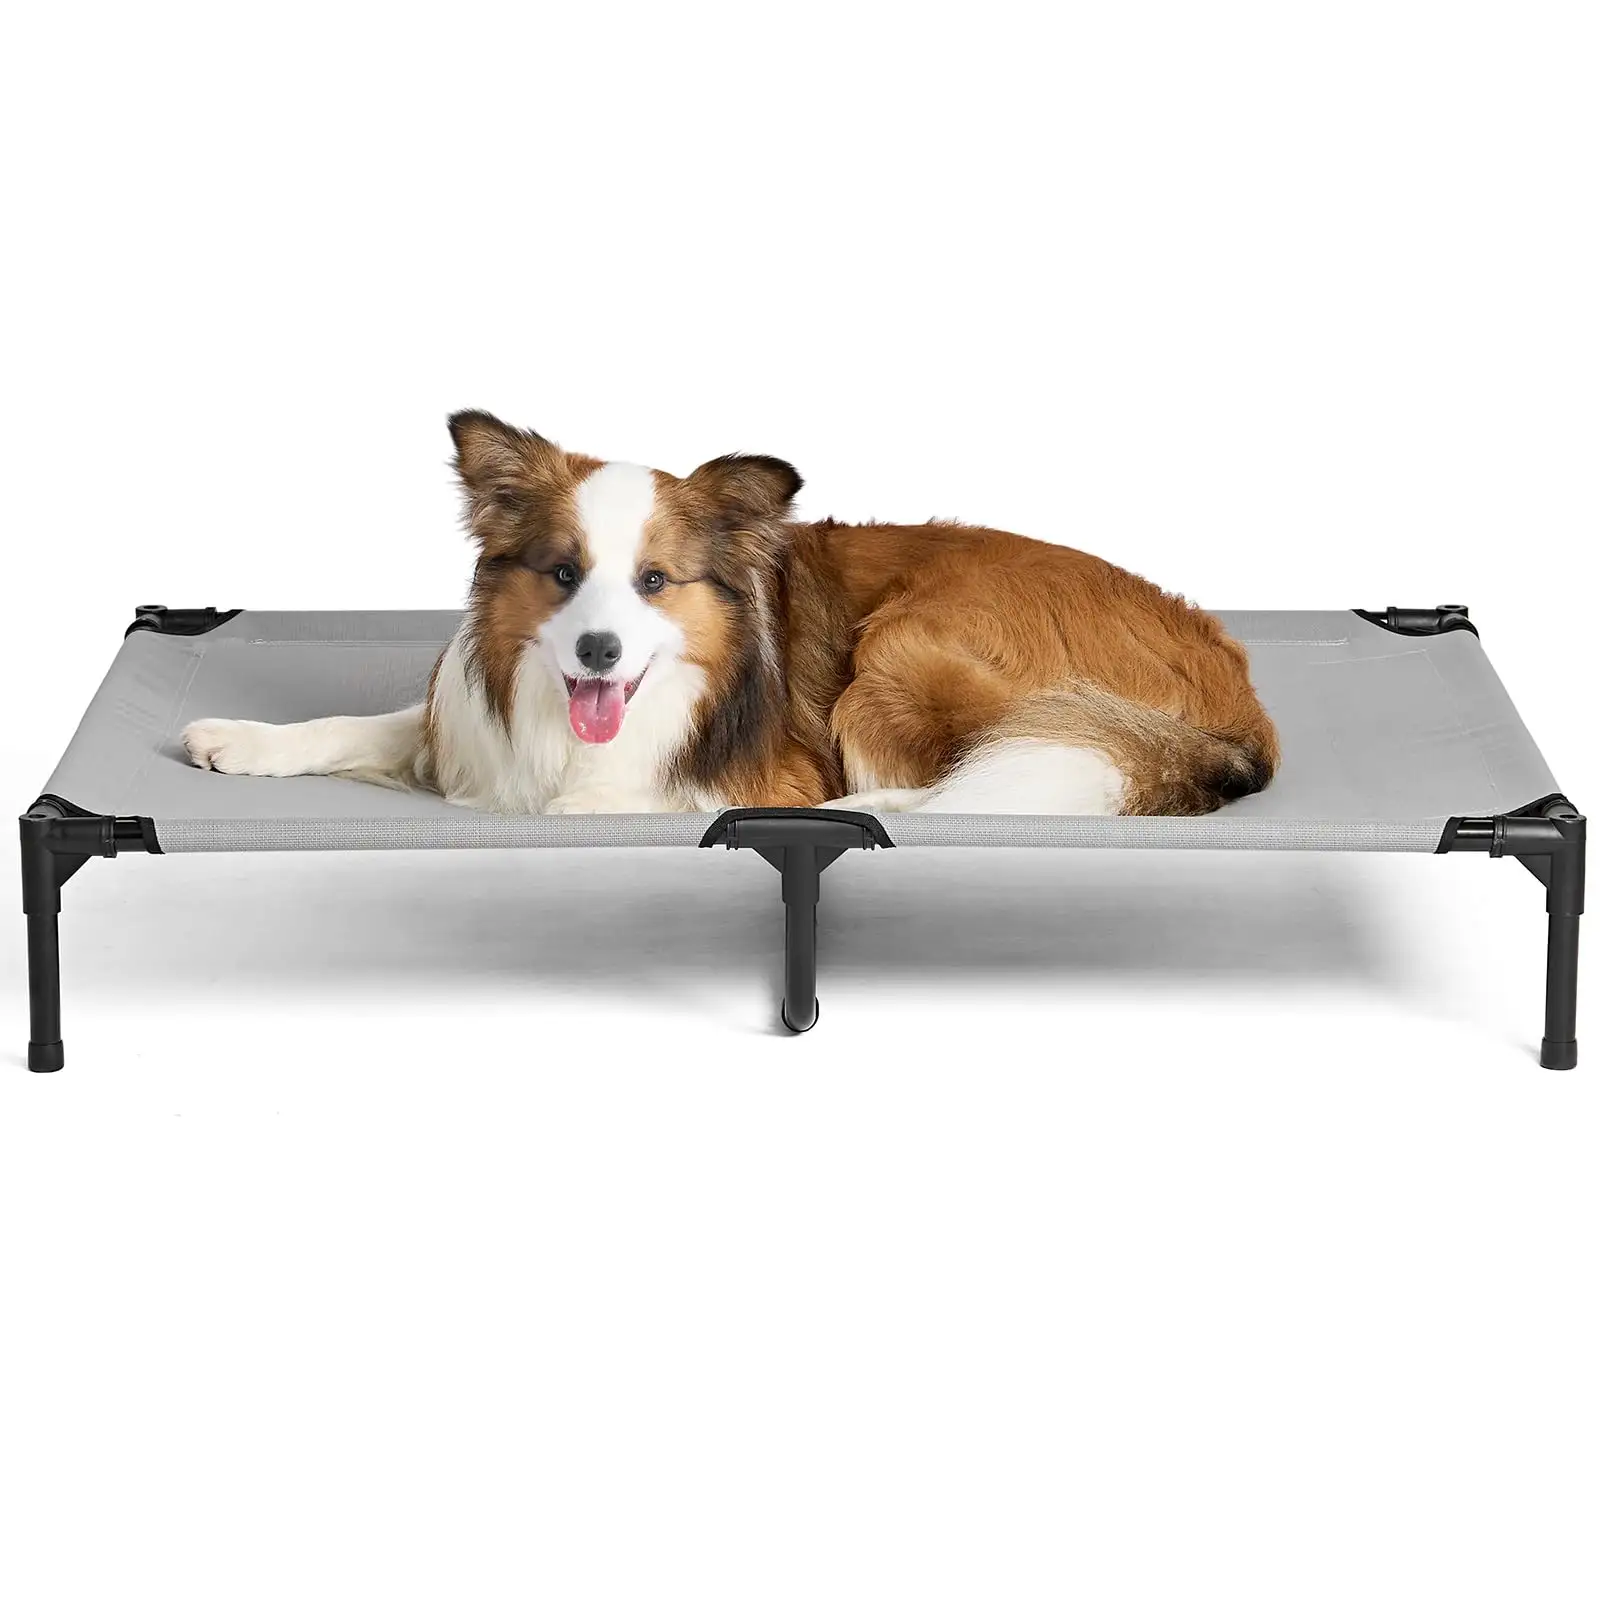 Cama portátil para mascotas con pies antideslizantes, cama para perros para acampar en interiores y exteriores, cama elevada de viaje resistente para perros